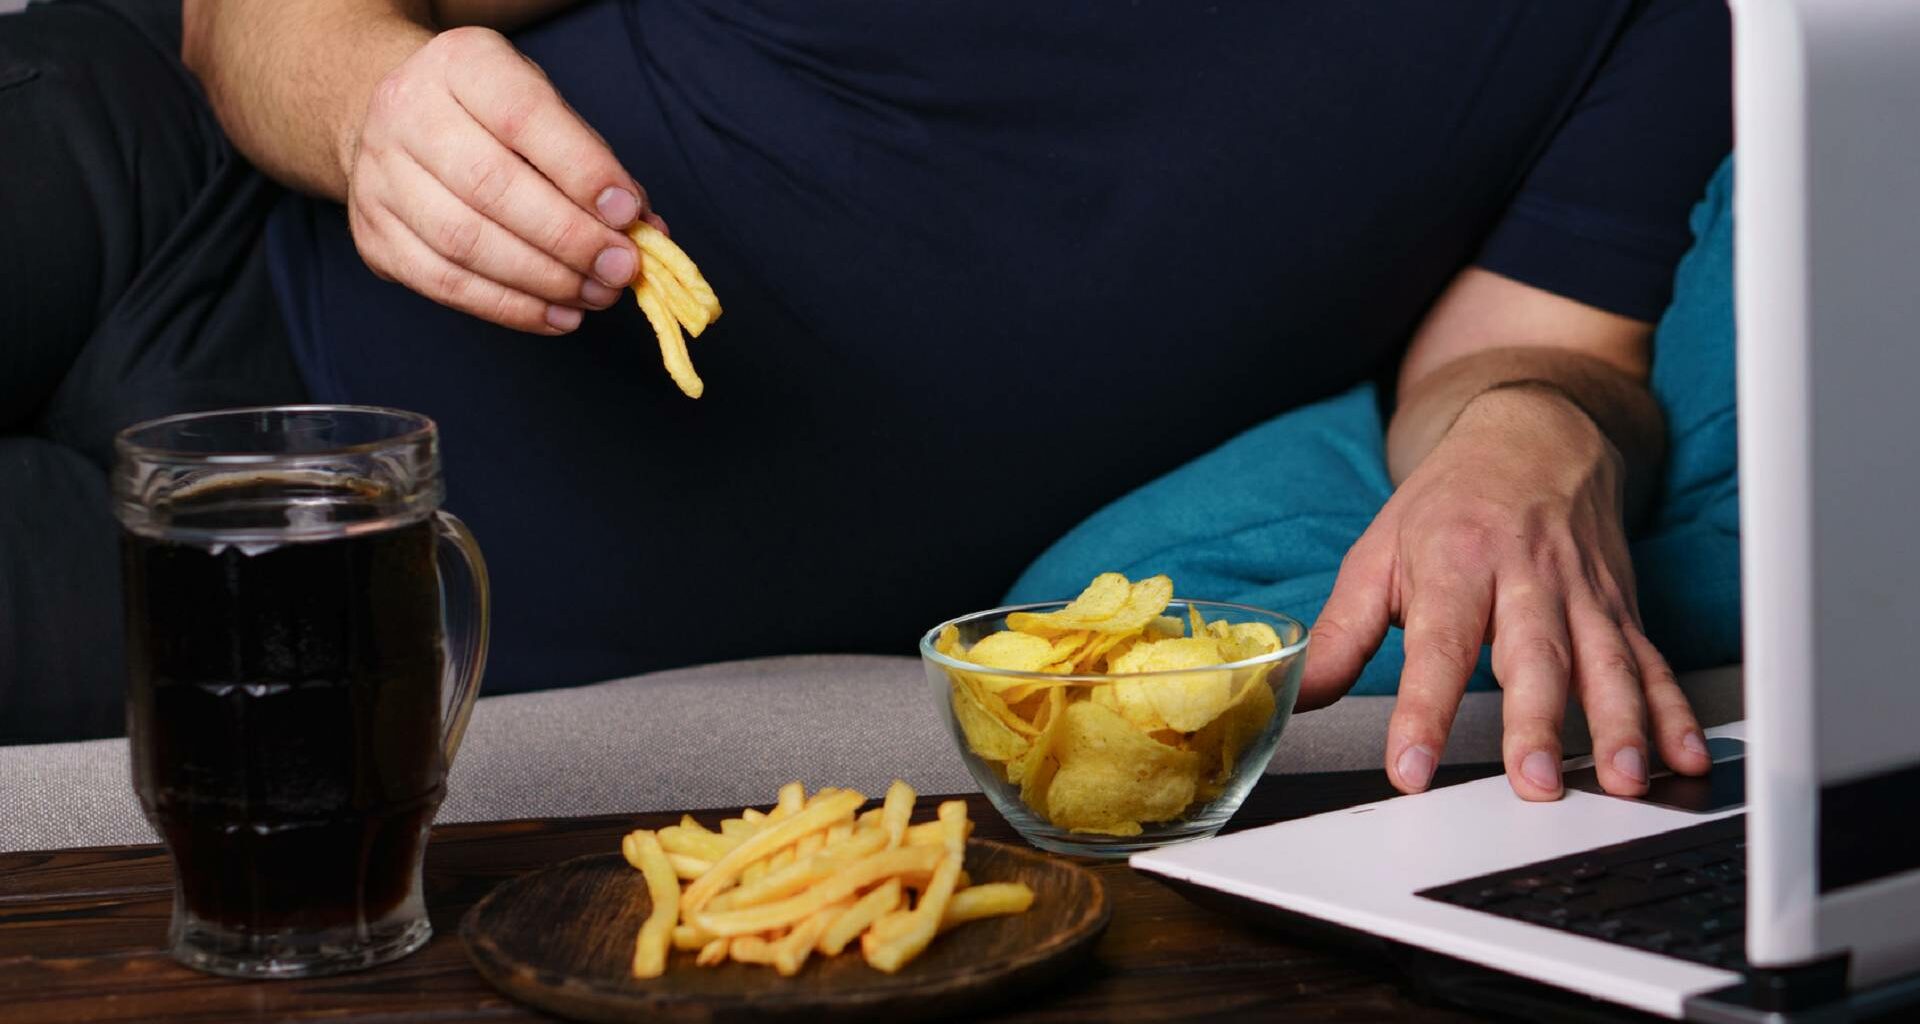 Underreporting trotz Kontrolle: Wieso Menschen bei Angaben zu ihrer Kalorienzufuhr häufig lügen